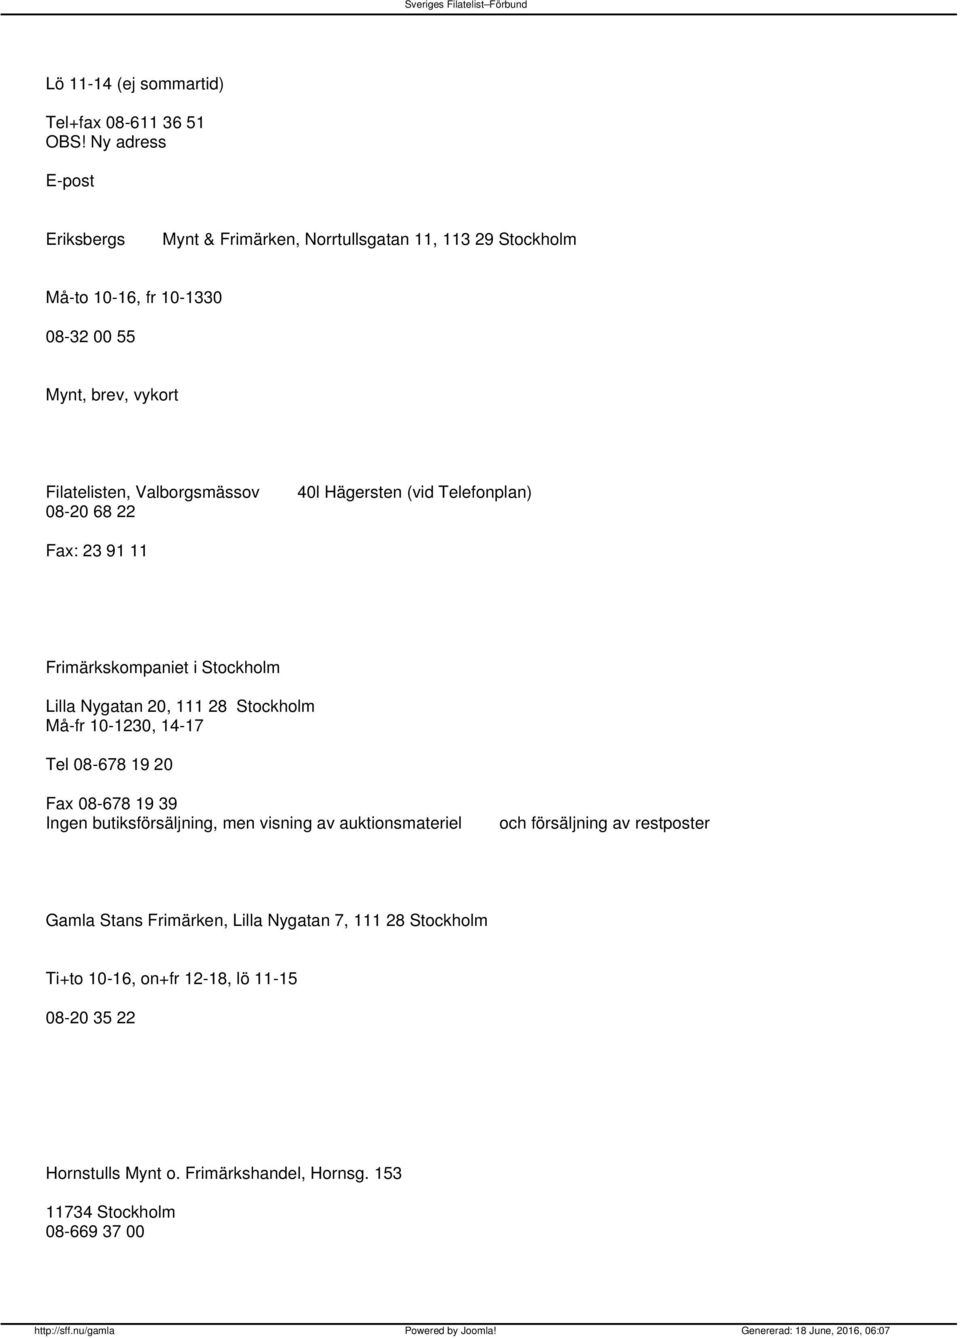 Hägersten (vid Telefonplan) 08-20 68 22 Fax: 23 91 11 Frimärkskompaniet i Stockholm Lilla Nygatan 20, 111 28 Stockholm Må-fr 10-1230, 14-17 Tel 08-678 19 20 Fax